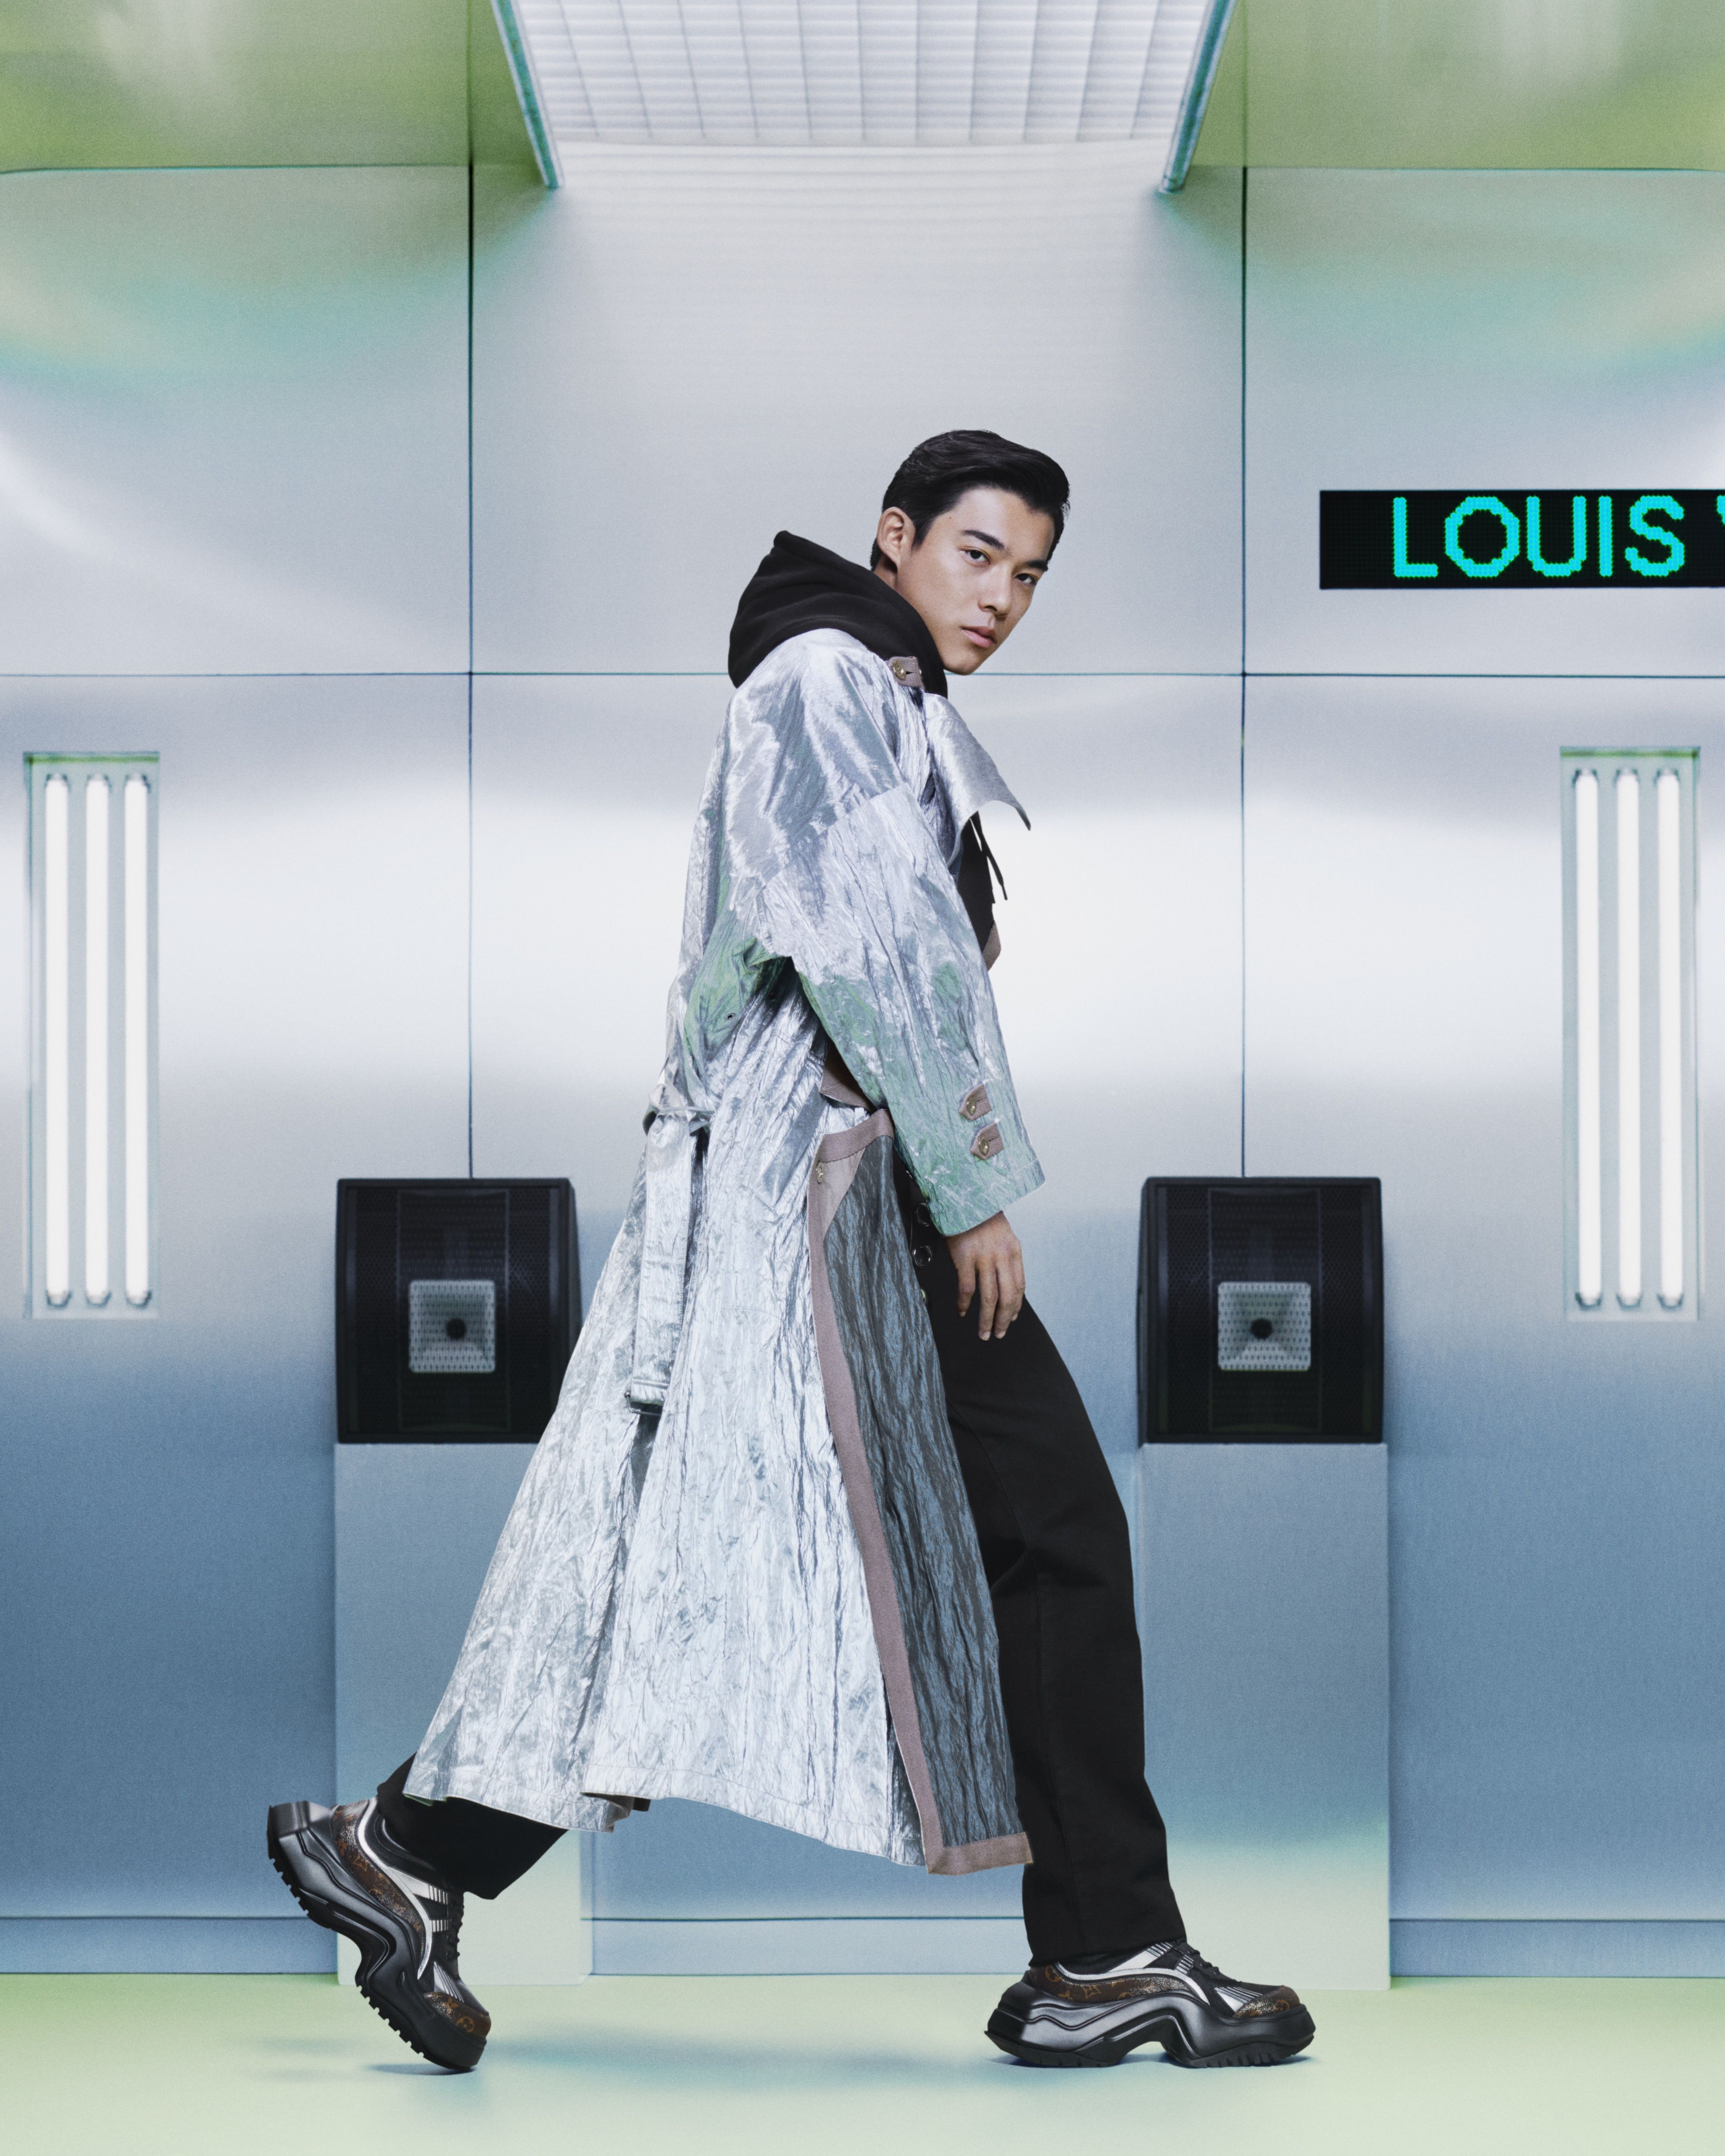 Louis Vuitton brengt zijn populaire Archlight-sneakers uit in de vorm van  een hoge laars – Sneakerstad